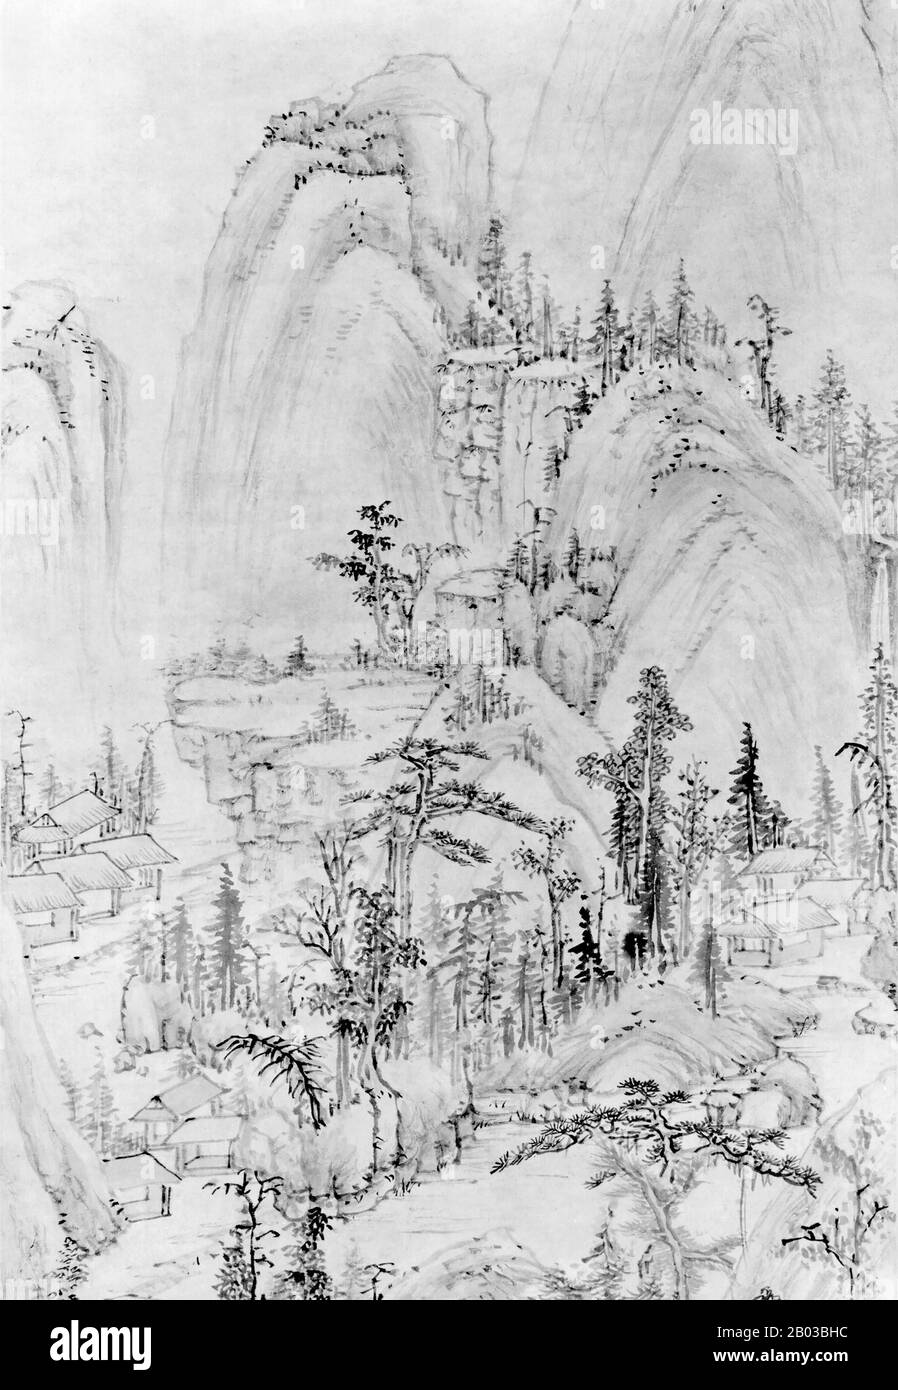 MO Shilong (1537-1587) war ein chinesischer Künstler, der während der Ming-Dynastie lebte. MO Shilong war in Kalligraphie und Malerei bewandert, obwohl seine Karriere durch seinen frühen Tod unterging. Stockfoto